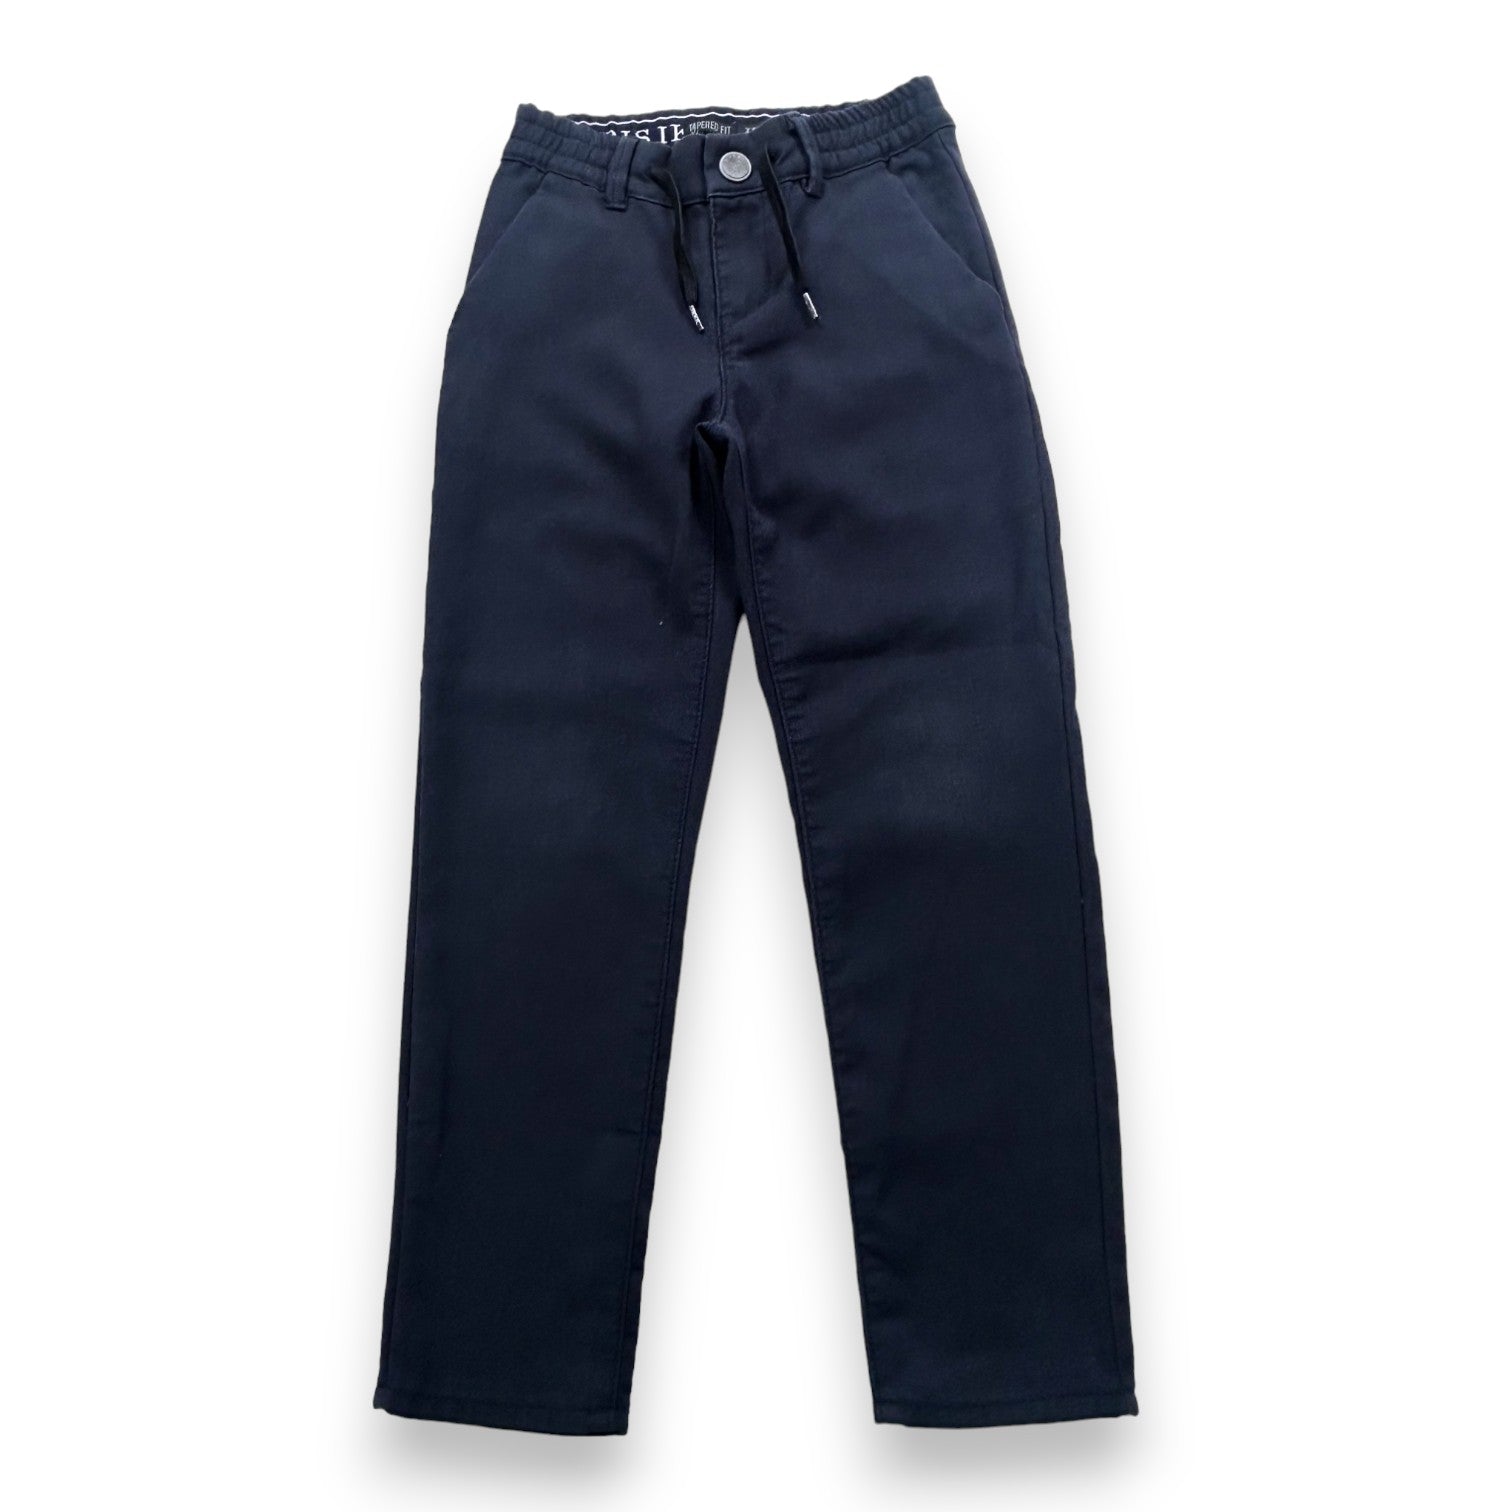 IKKS - Pantalon bleu coupe droite - 8 ans